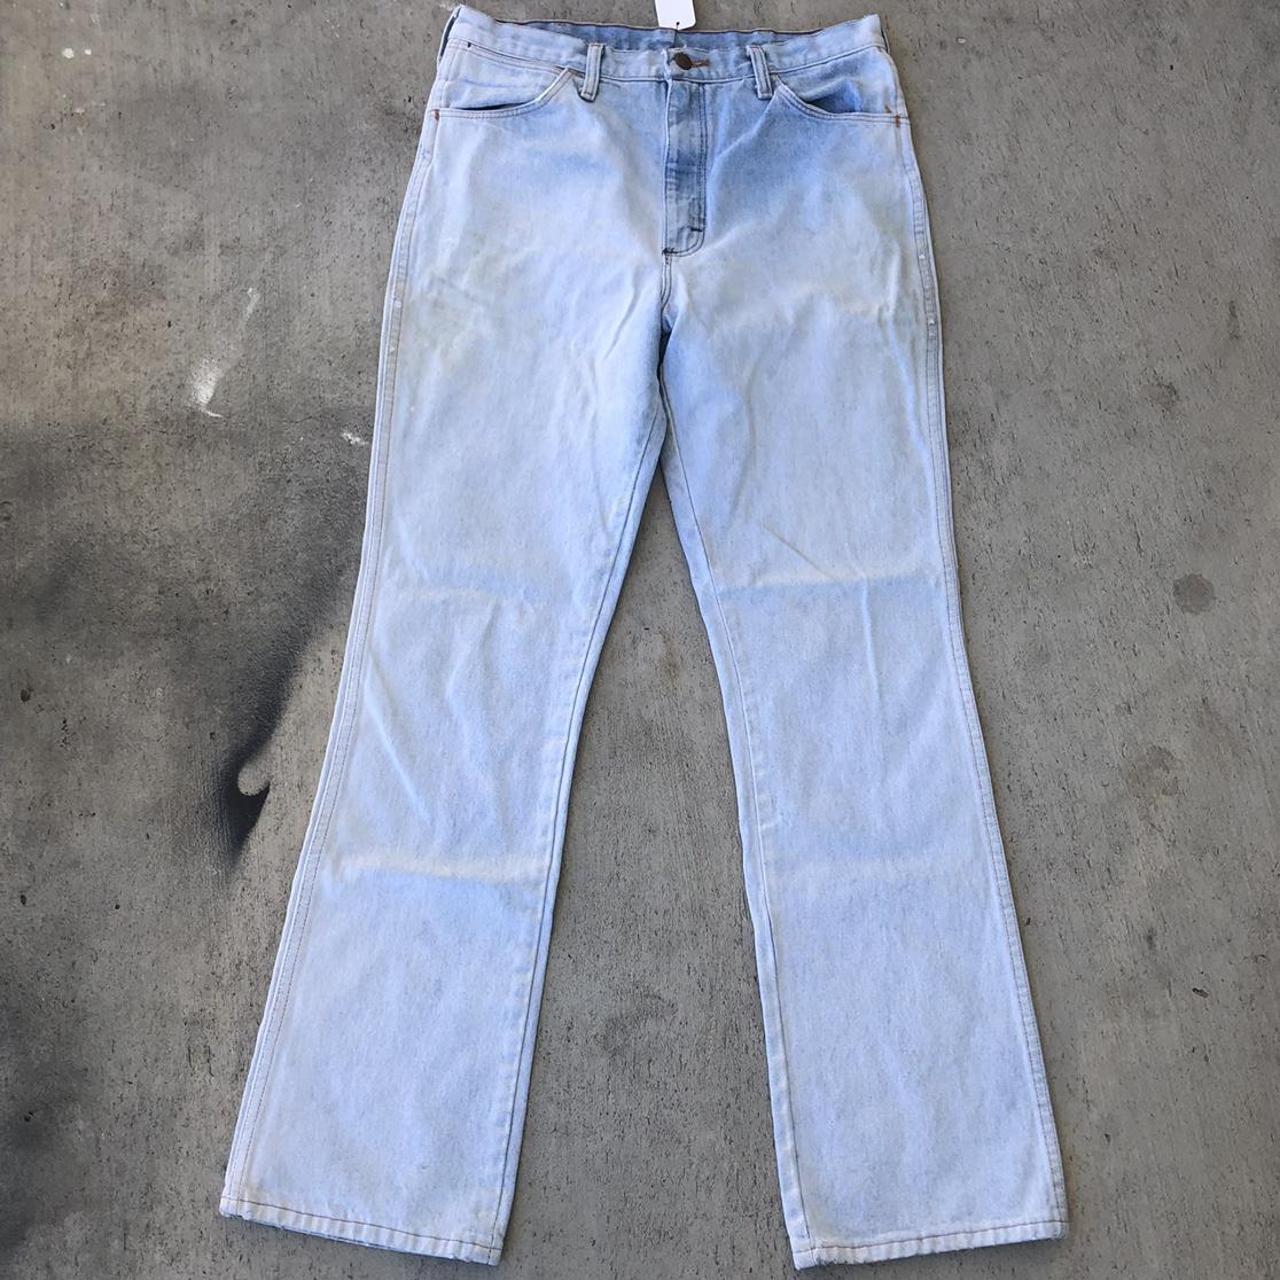 Vintage 80’s Wrangler Jeans, super light wash no... - Depop